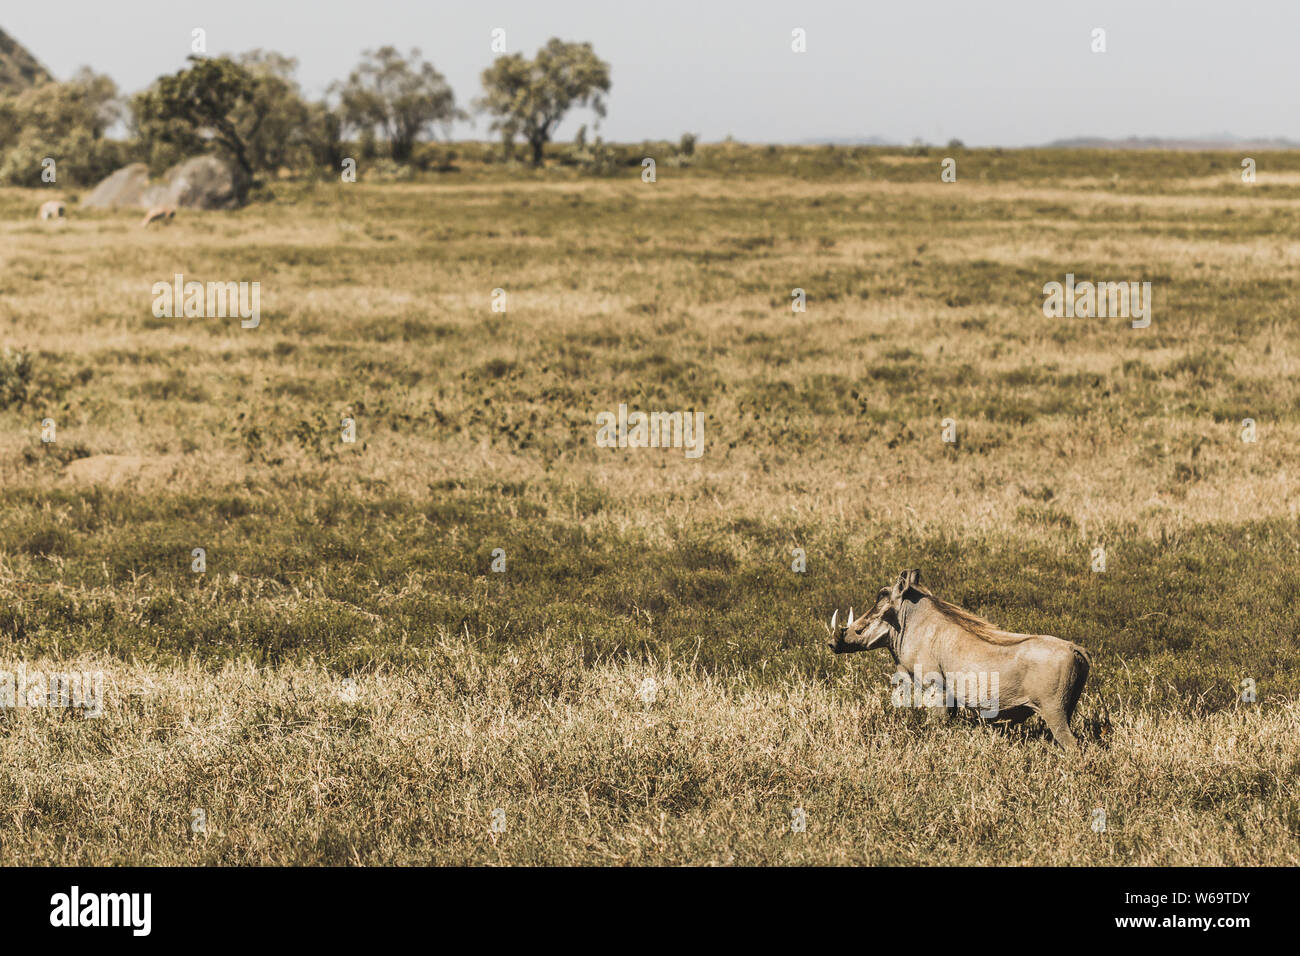 Un phacochère commun dans les savanes à un safari dans le parc national du Kenya. L'harmonie dans la nature. Les animaux sauvages dans les prairies. Banque D'Images